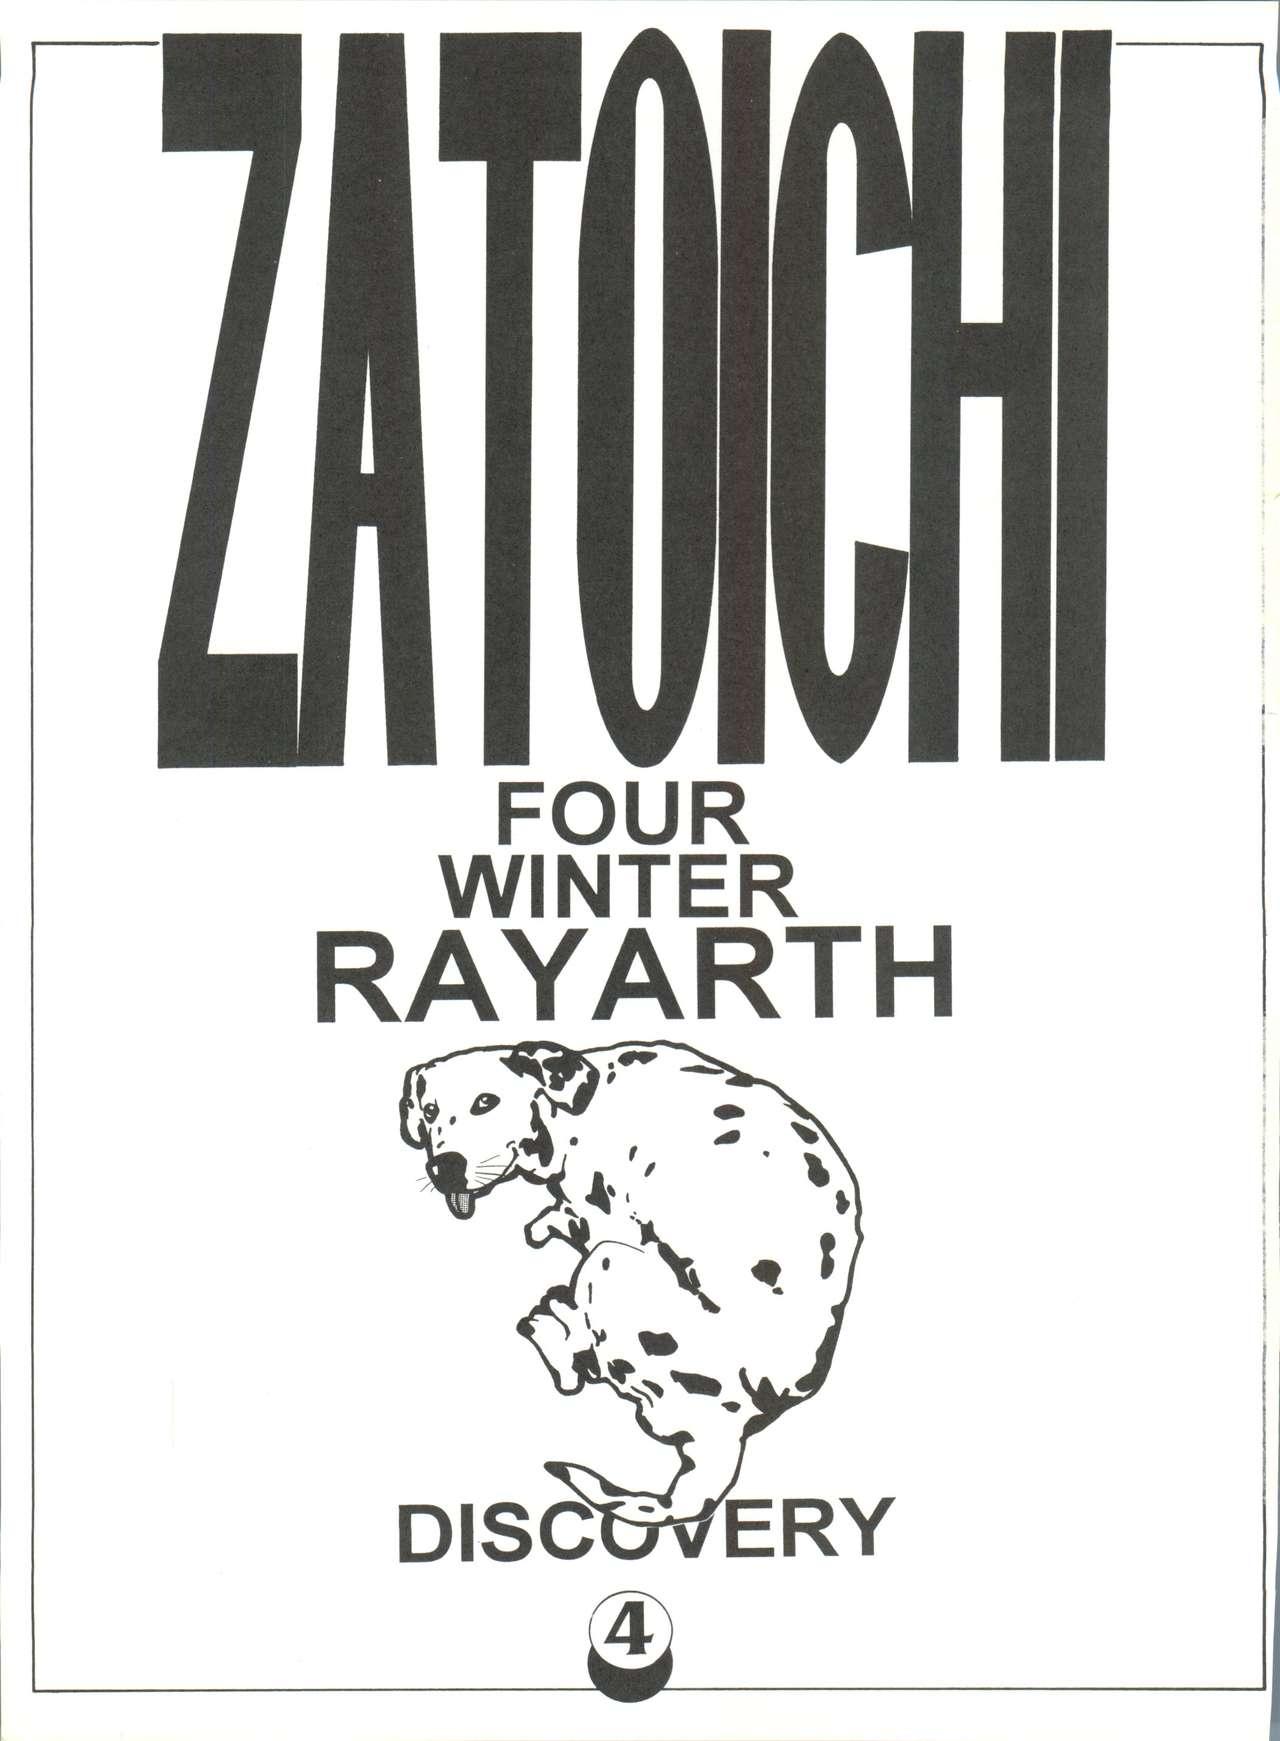 Zatoichi 4 Winter - Rayearth 2